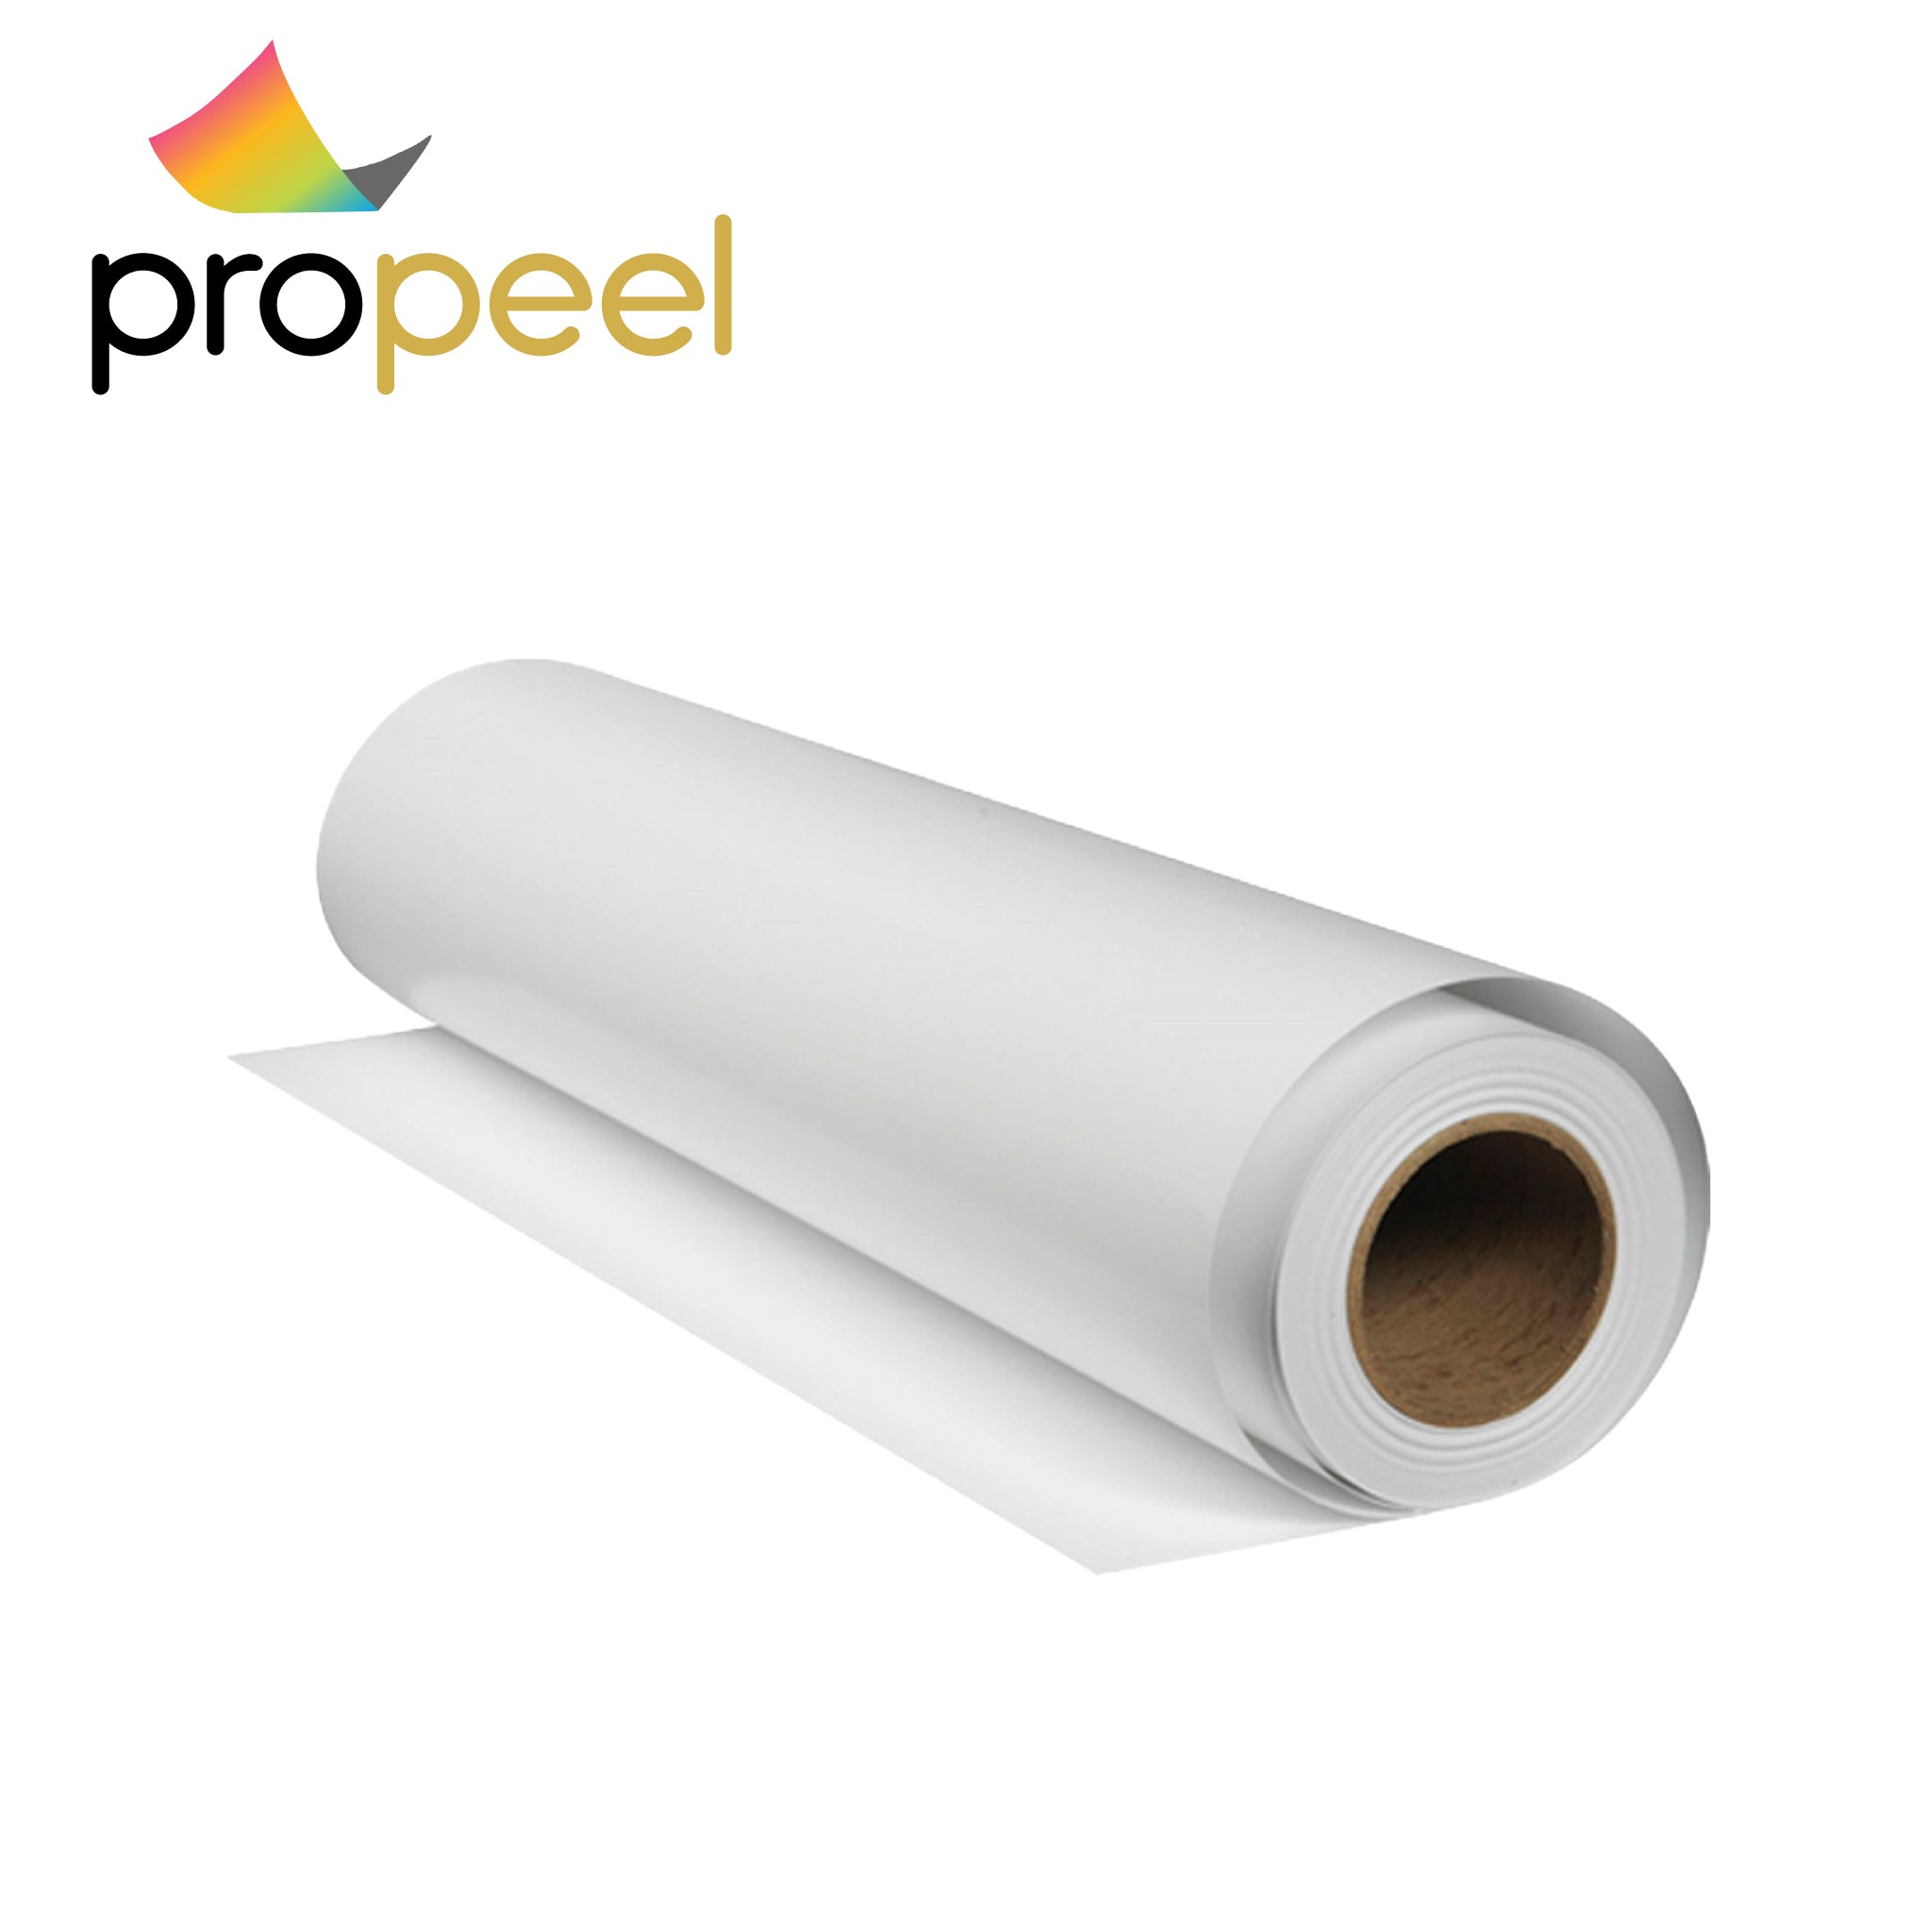 Propeel Window Vinyl 6 mil | Garment Printer Ink